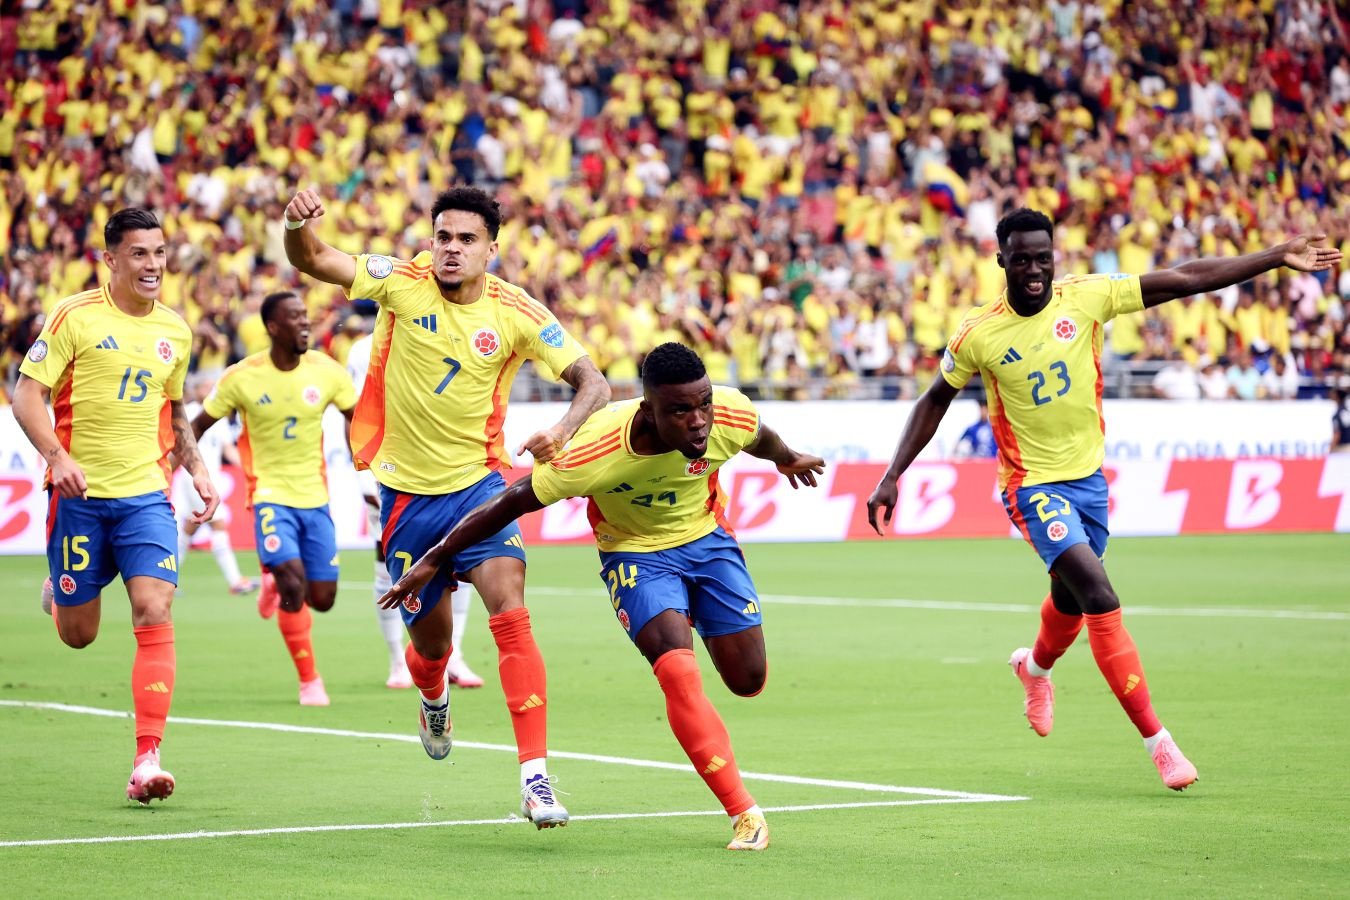 Колумбия прекрасна, как на ЧМ-2014. Кордоба и ветераны тащат сборную к триумфу